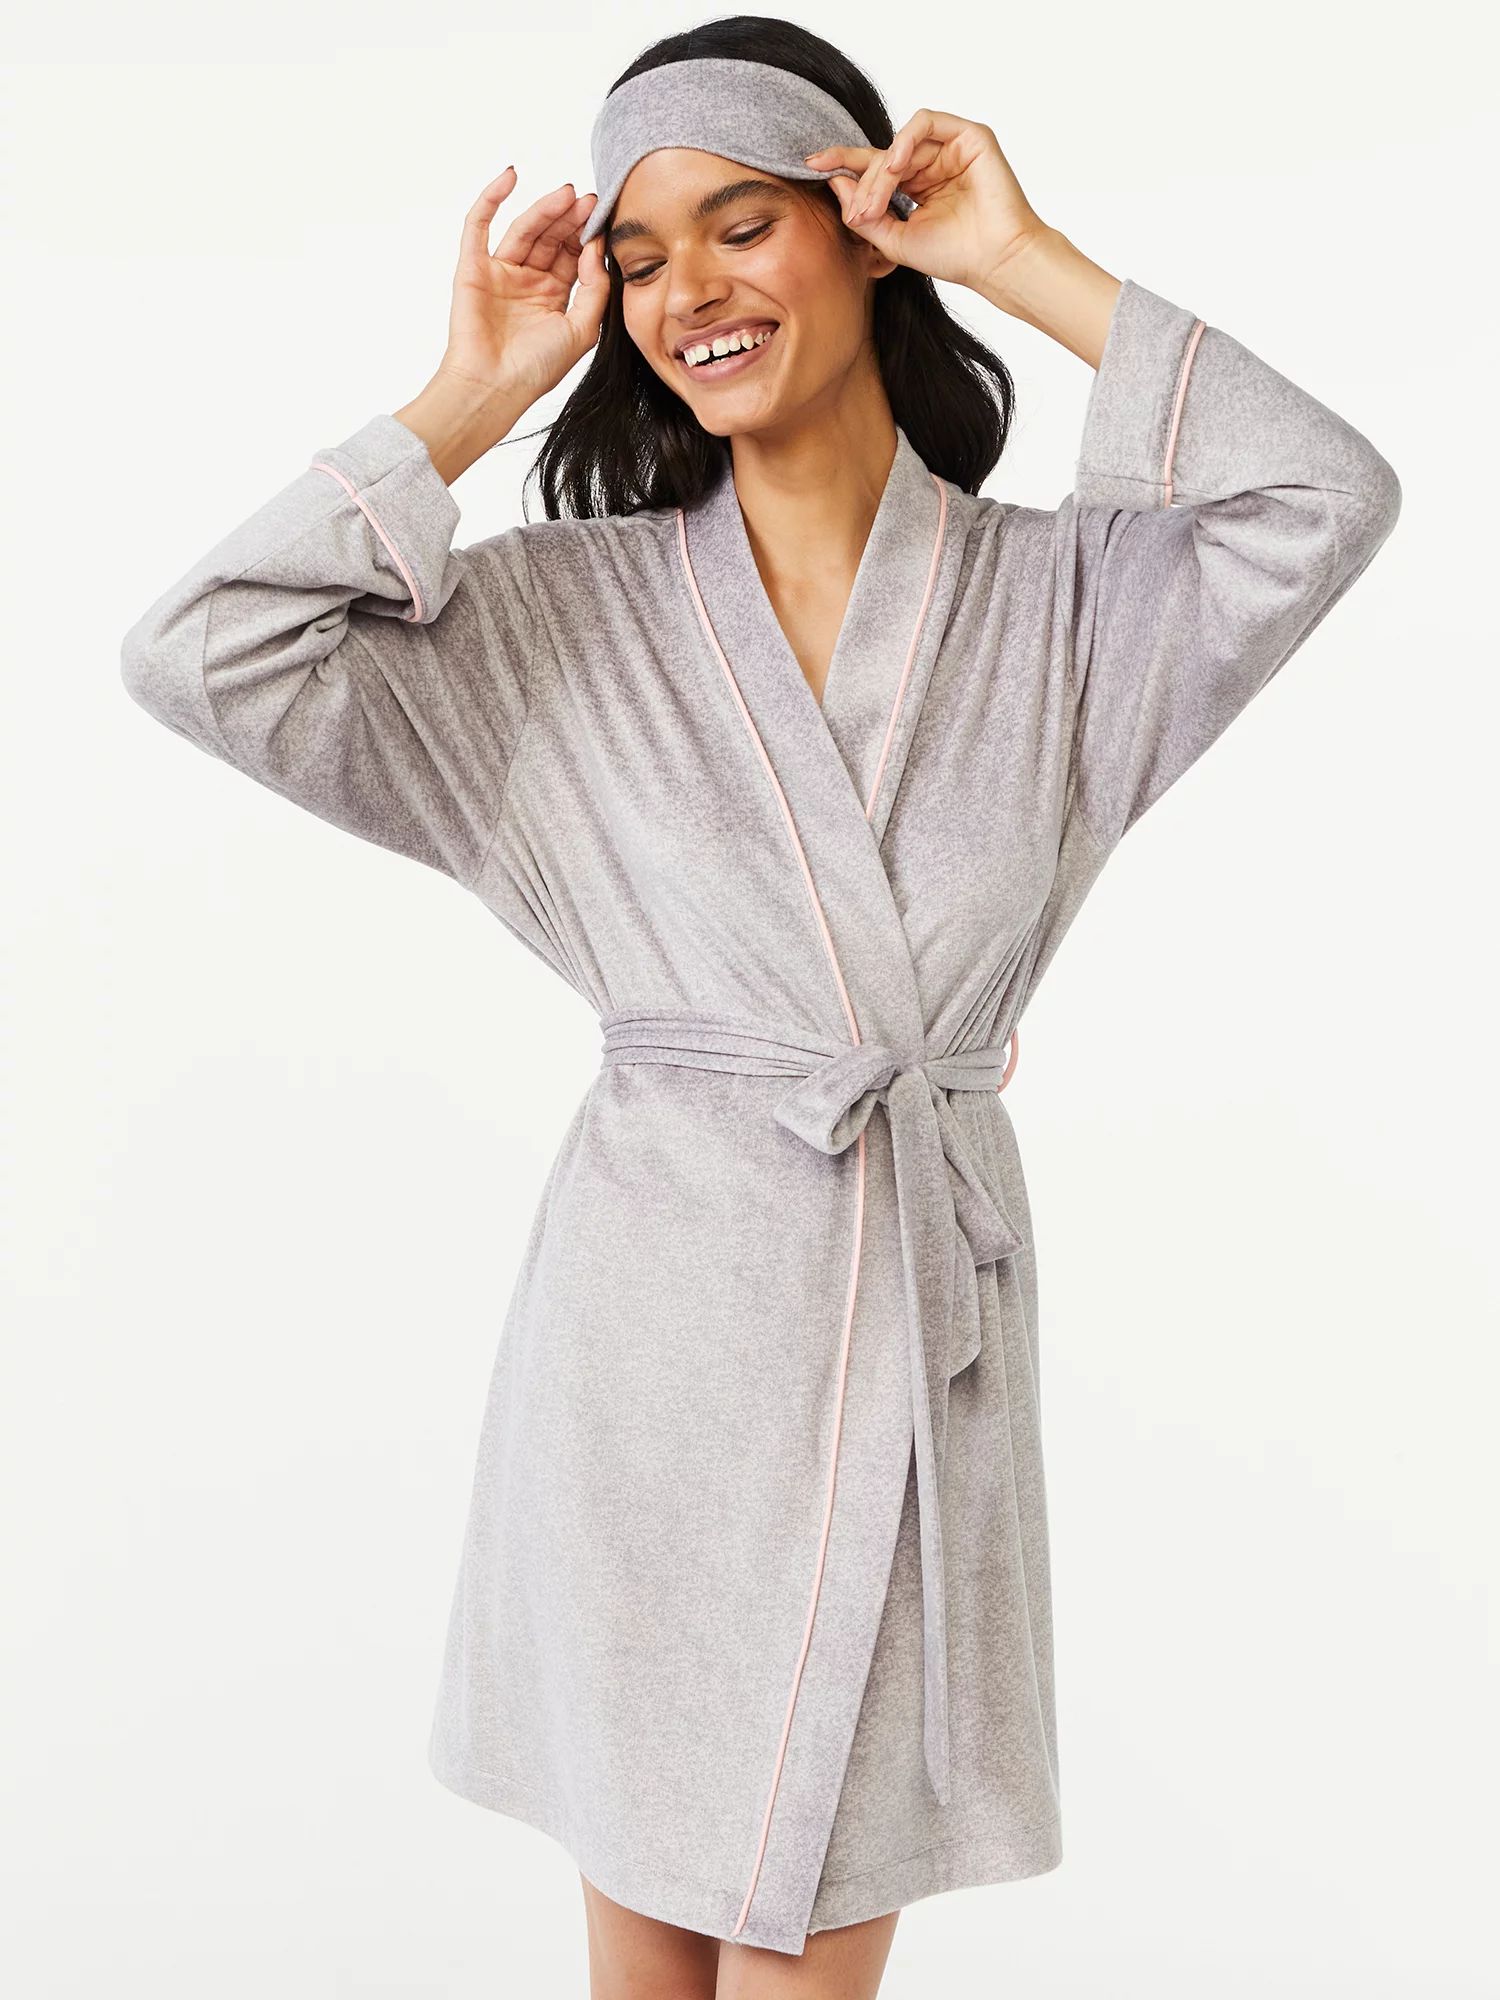 Joyspun Women's and Women's Plus Velour Knit Robe and Eye Mask Set, 2-Piece, Sizes up to 3X | Walmart (US)